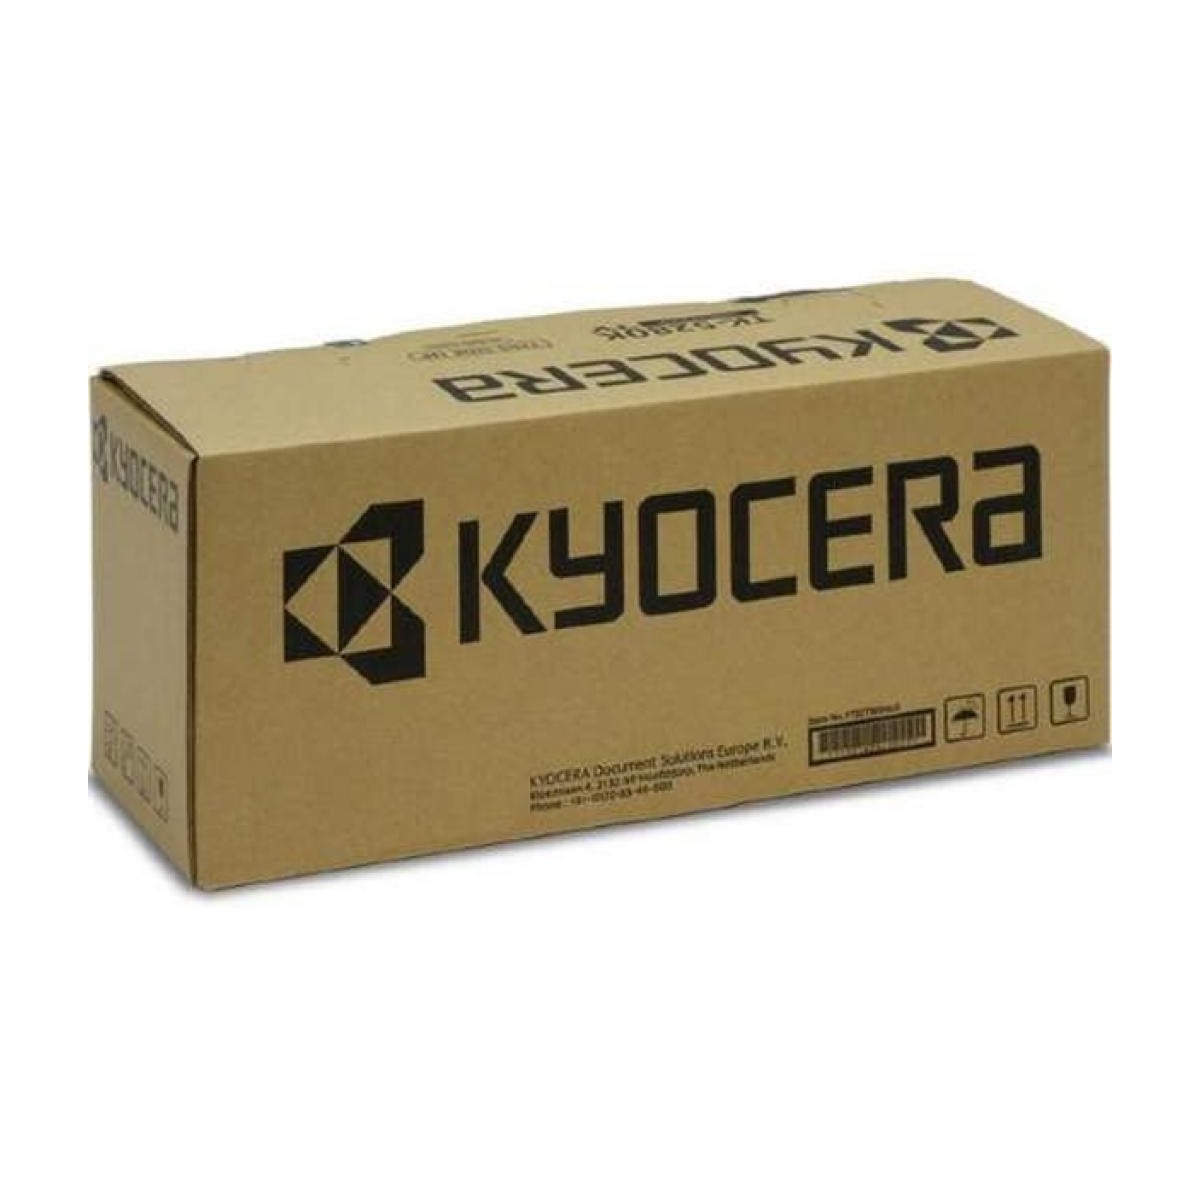 Kyocera FK-450 (E) - Laser - Kyocera - FS-6970DN - 1 pc(s)